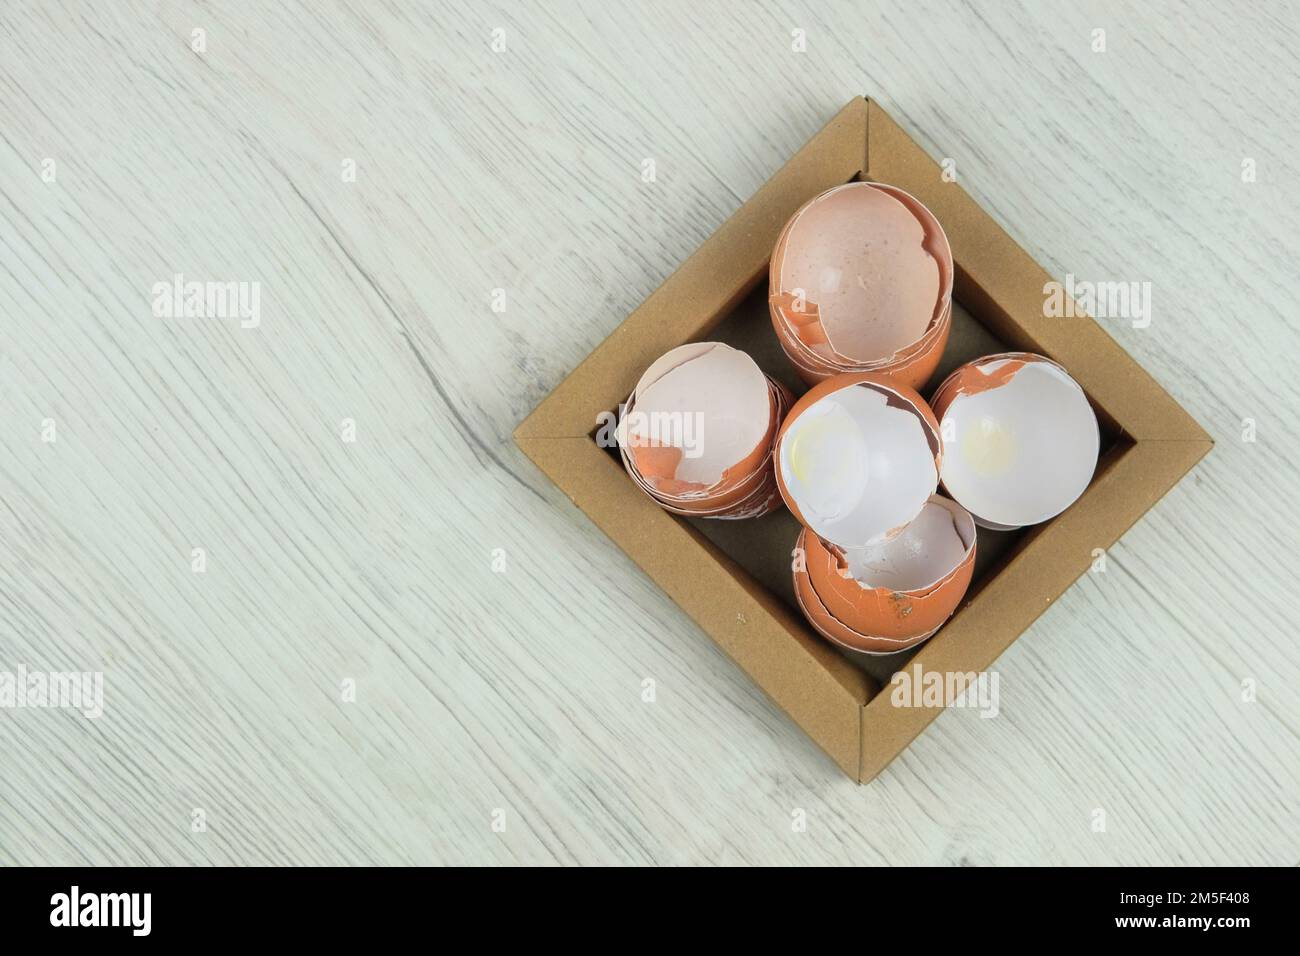 Pile de coquilles d'œufs cassées fissurées sur l'assiette en carton. Déchets organiques pour le compost. Vue de dessus. Copier l'espace. Banque D'Images